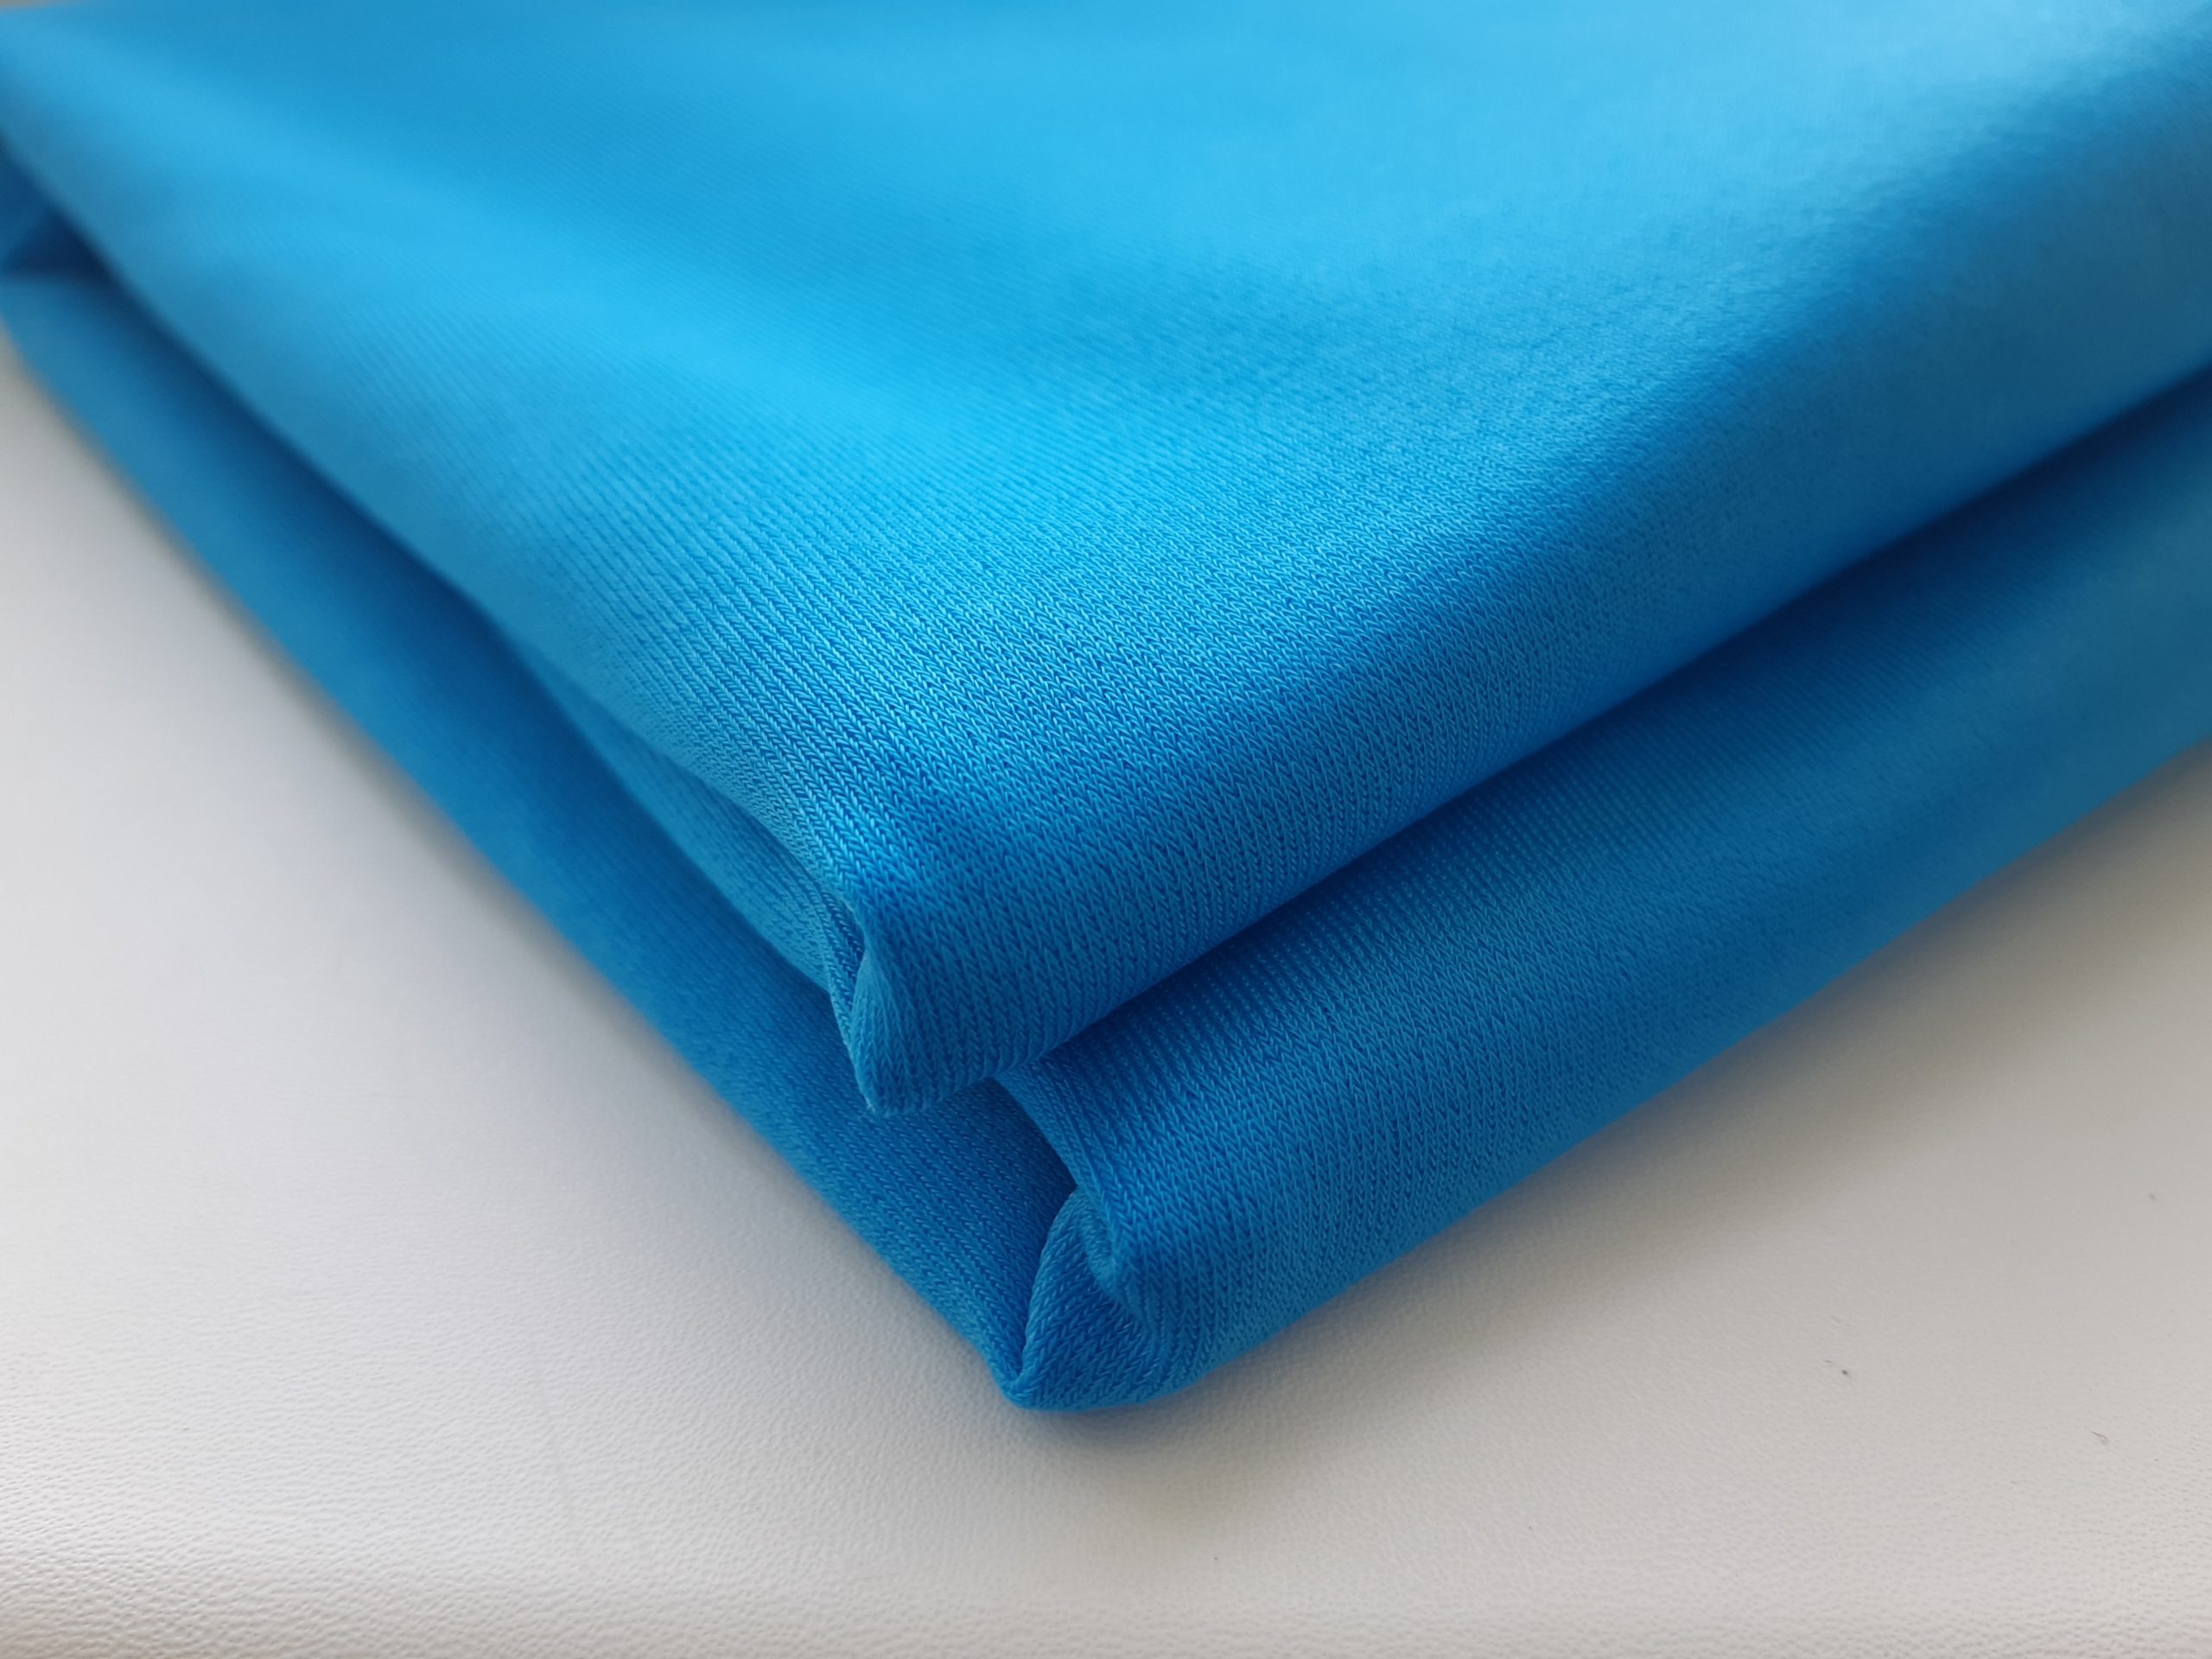 Одеяло из микрофибры: плюсы и минусы, отзывы покупателей, как выбрать